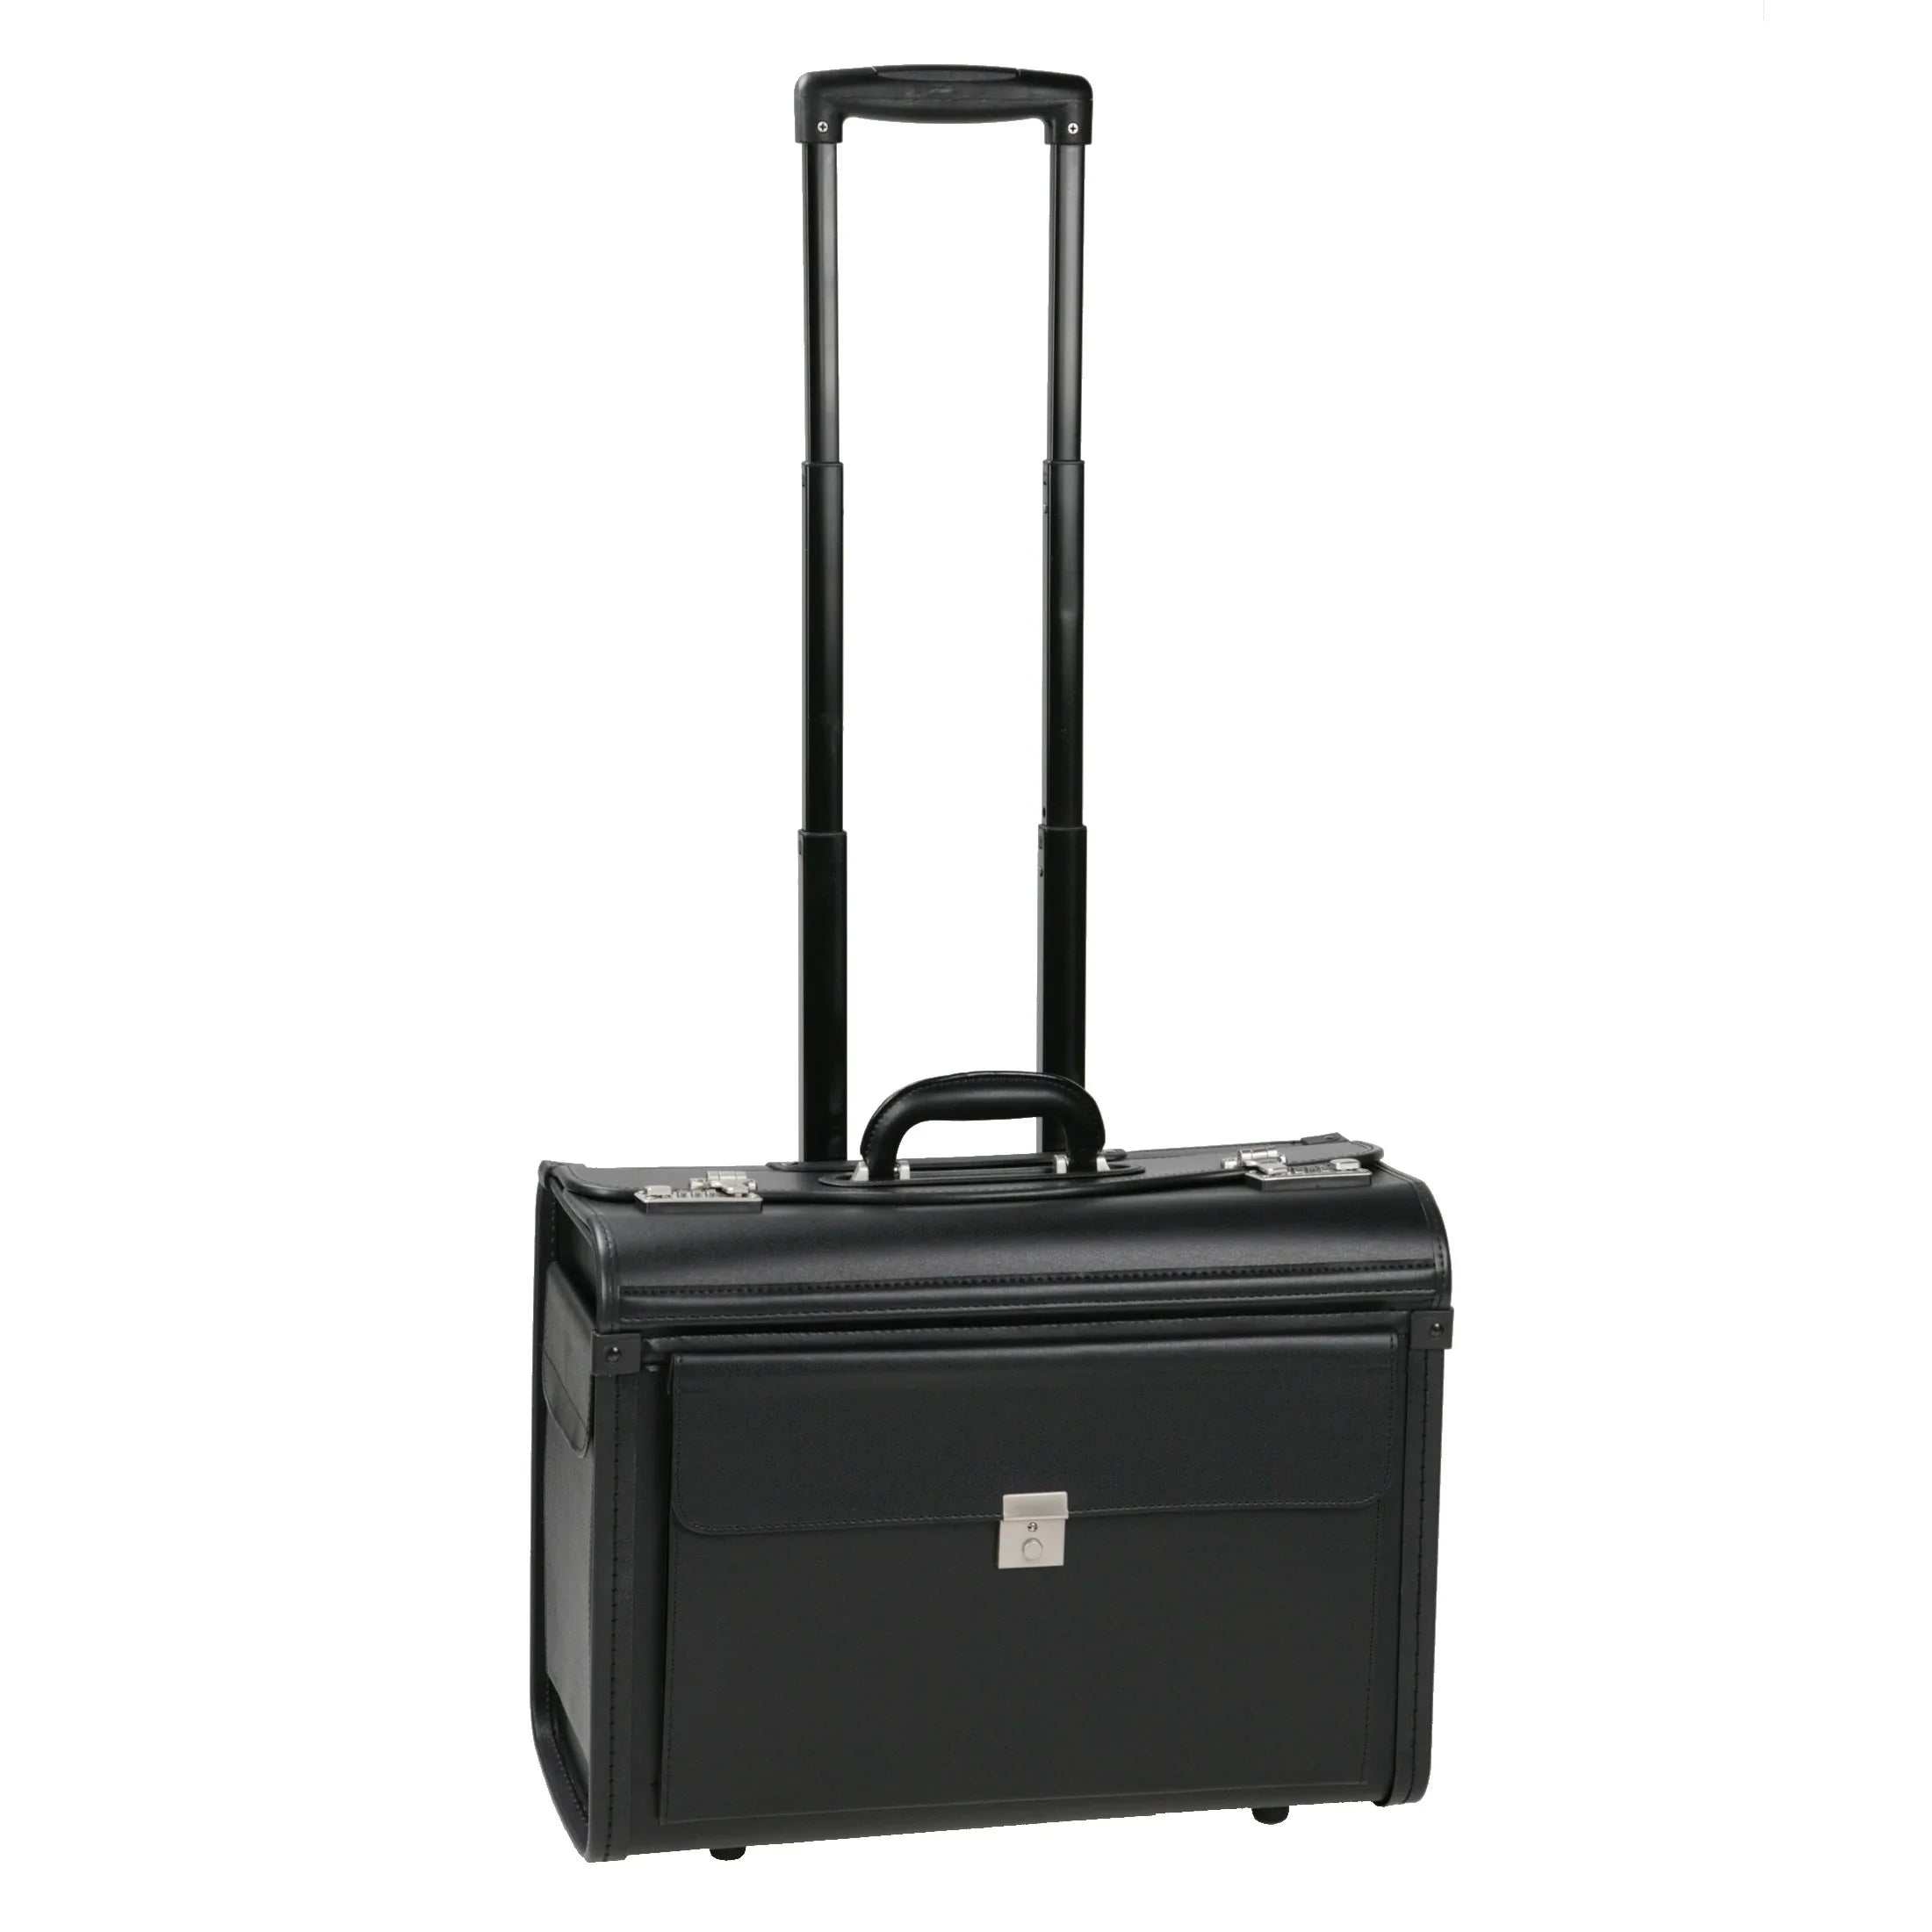 Dermata business pilot suitcase on wheels 48 cm - black